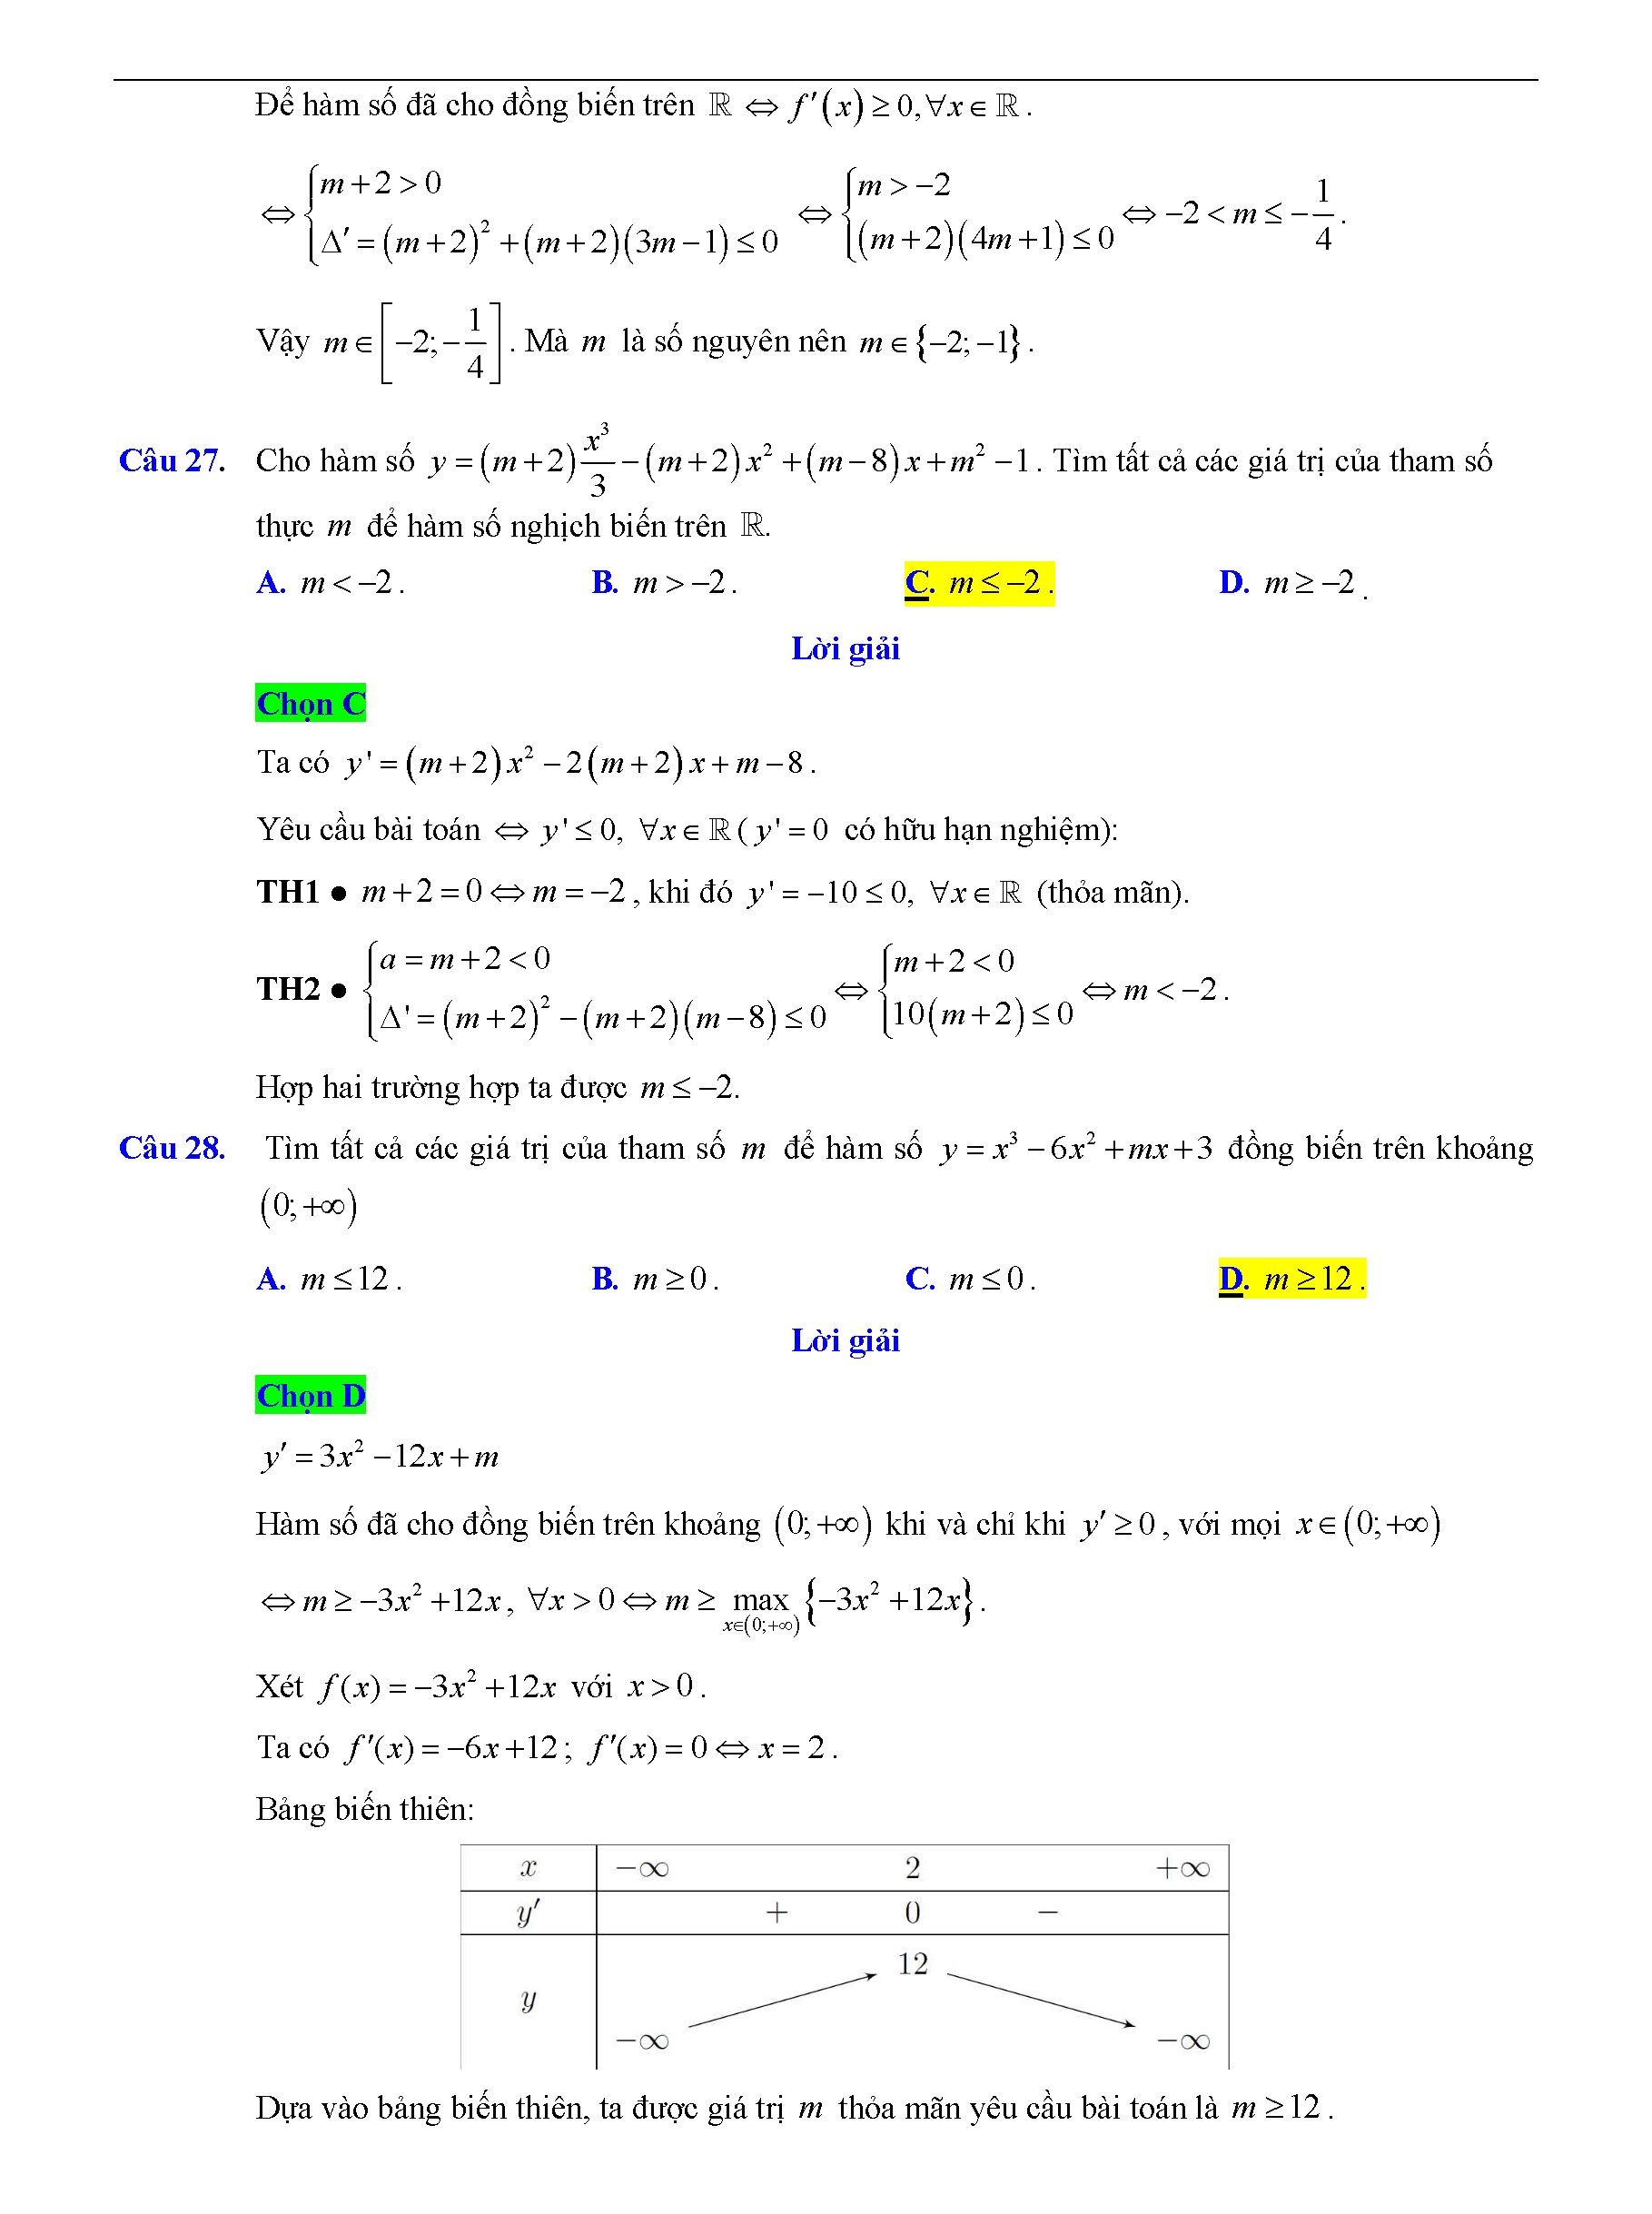 Trắc nghiệm tìm m để hàm số đơn điệu 18